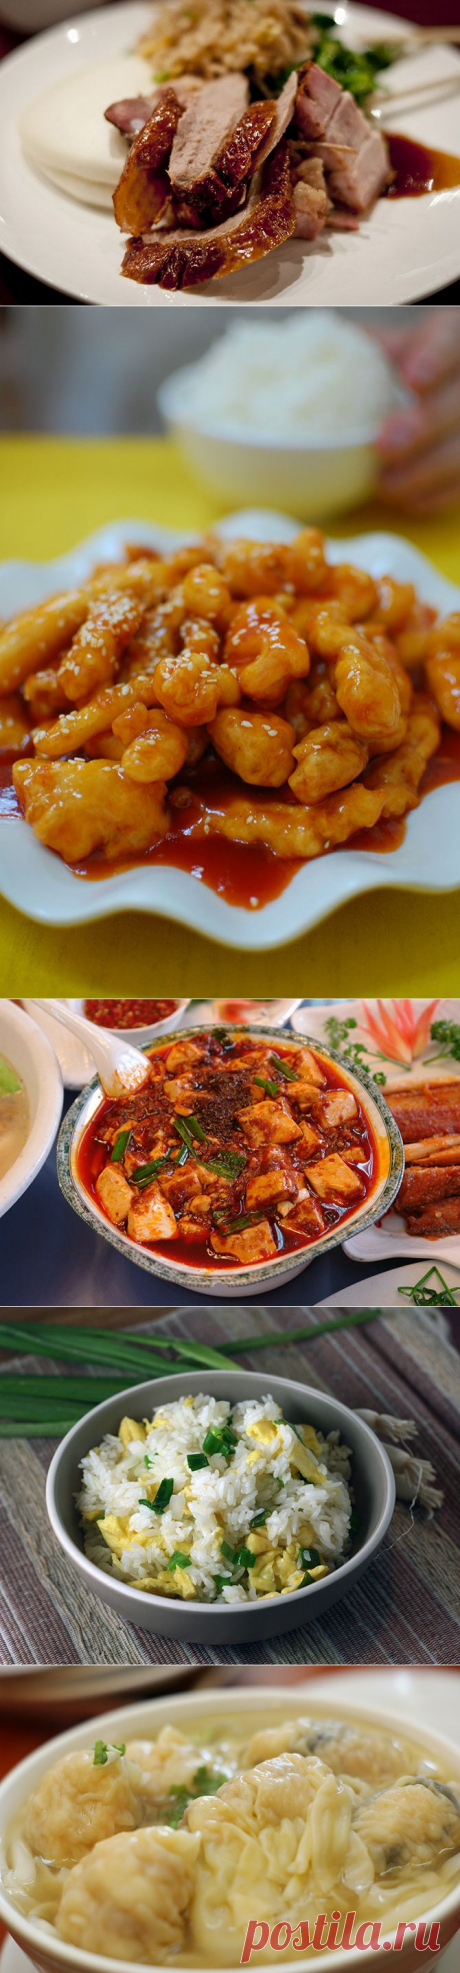 Китайская кухня, приемлемая для европейца. Китайская гастрономия состоит из восьми региональных «котелков» — сычуаньской, кантонской, аньхойской, шаньдунской, фуцзяньской, цзянсу, чжэцзянской, хунаньской кухонь. Объединяющей их особенностью считается в первую очередь польза для здоровья, а потом уже вкус. Ни одна китайская трапеза не обходится без риса, соевого соуса и овощей. В почёте здесь все виды мяса, рыбы, морепродуктов.